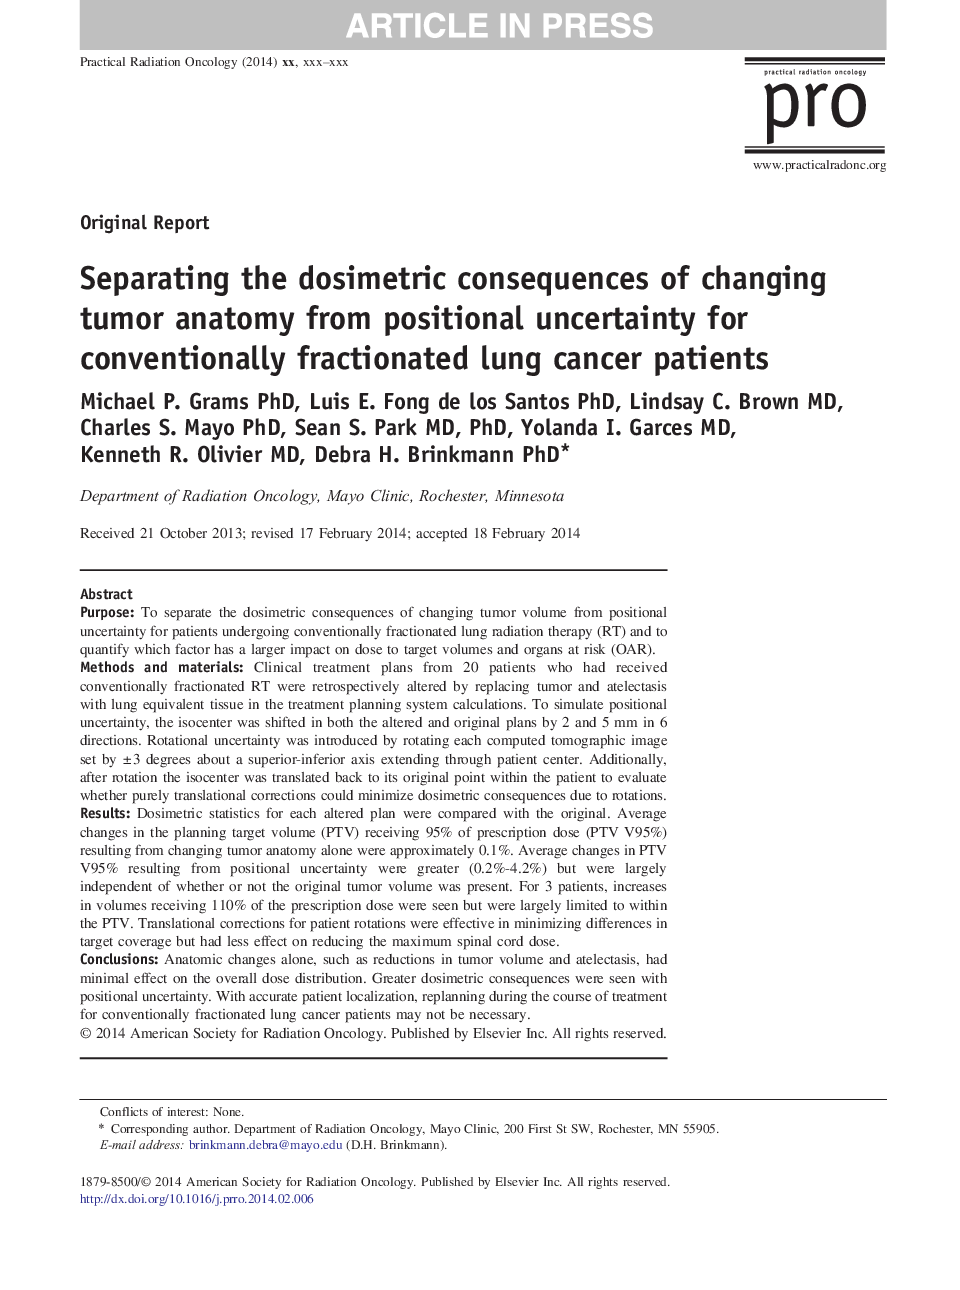 جداسازی پیامدهای دوزیمی تغییر آناتومی تومور از عدم قطعیت موقعیت برای بیماران مبتلا به سرطان ریه 